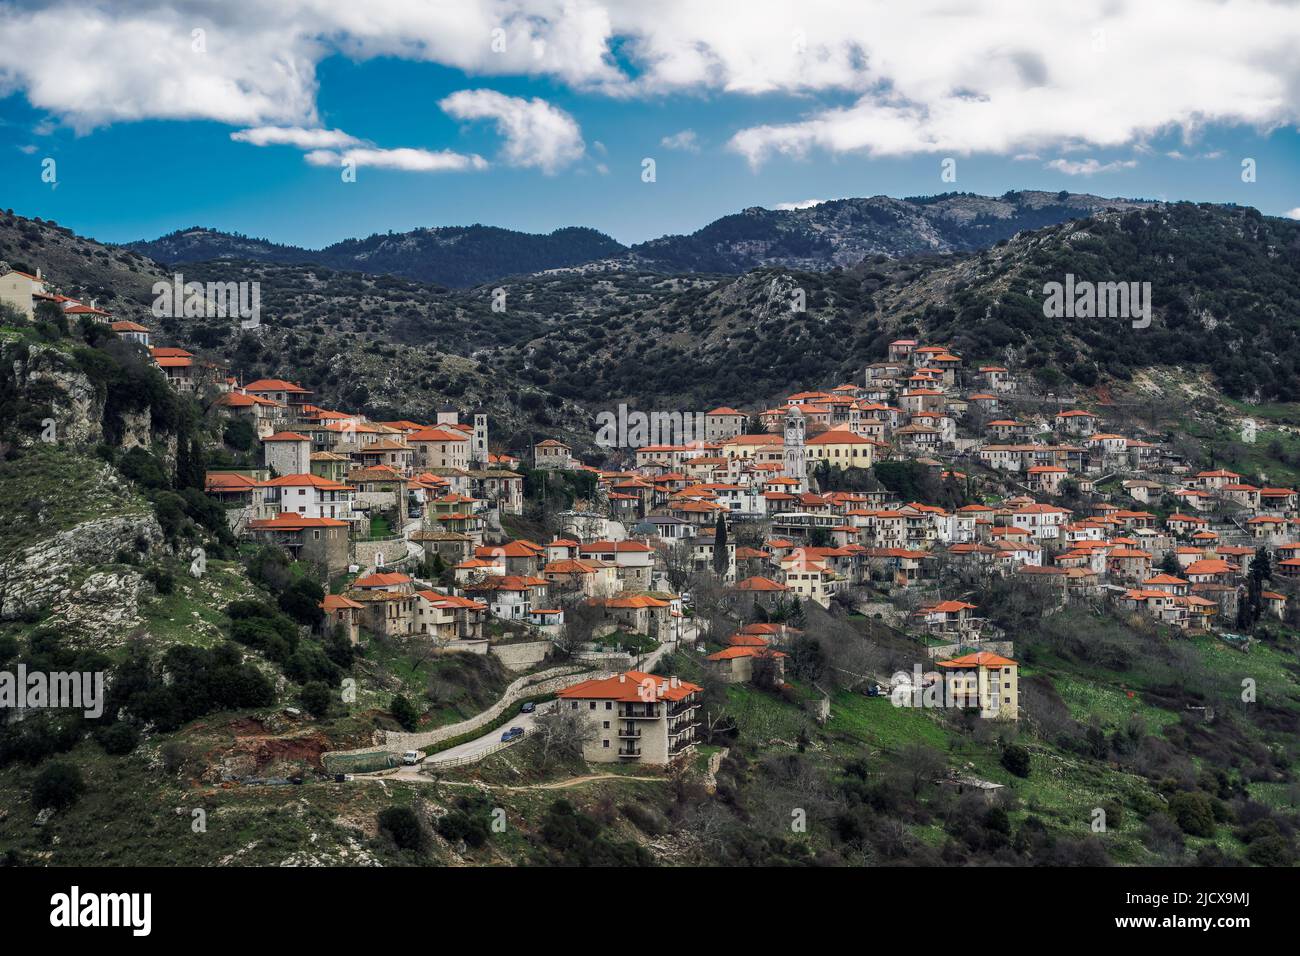 Village grec vue sur la montagne avec des maisons traditionnelles de faible hauteur avec tuiles rouges de toit à Dimitsana, Arcadia, Péloponnèse, Grèce, Europe Banque D'Images